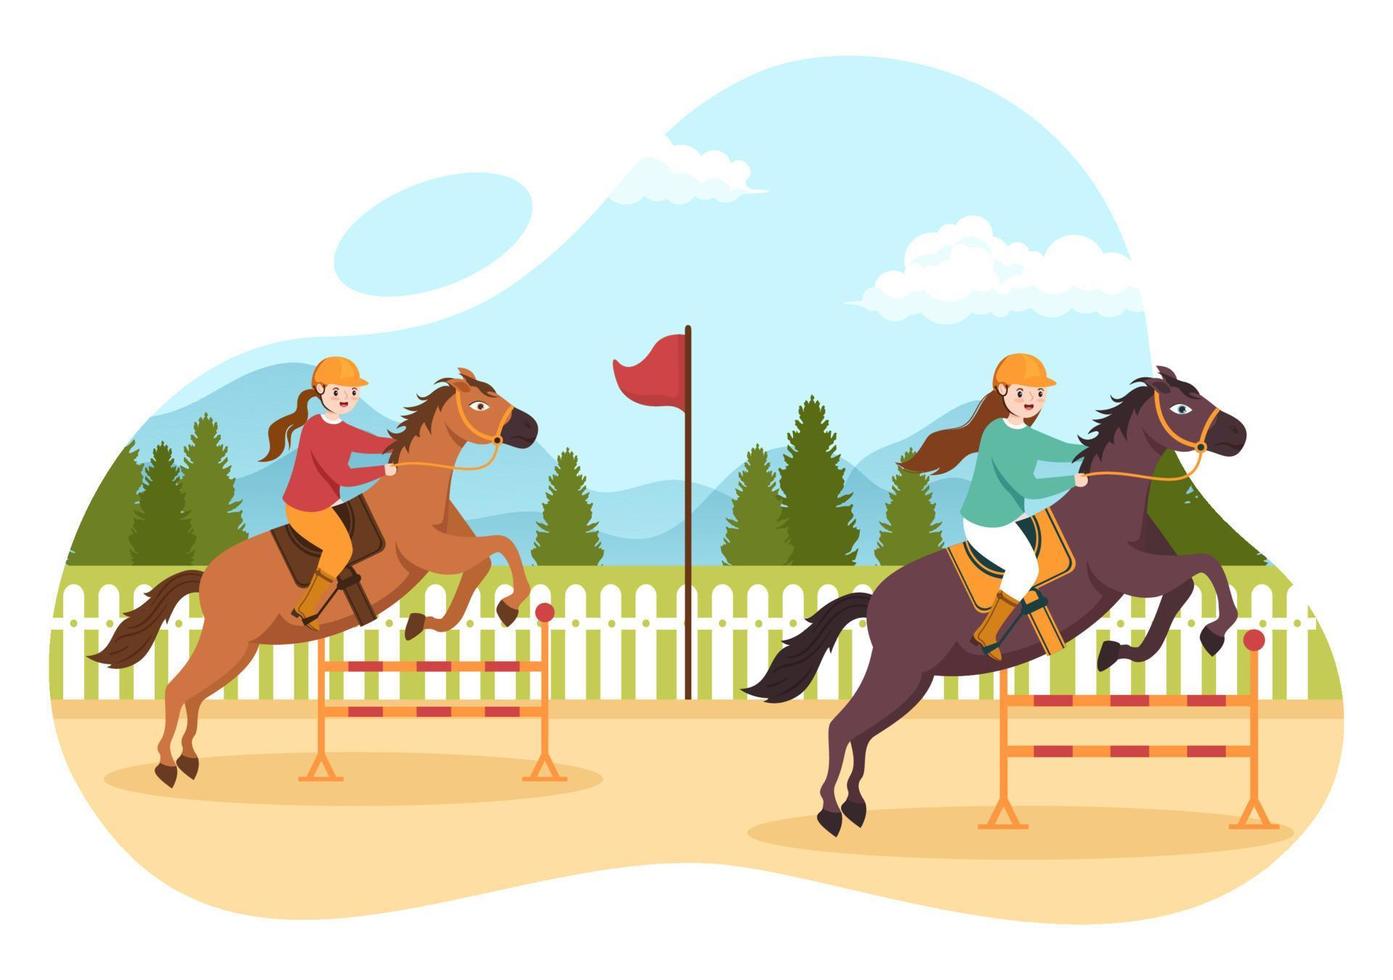 pferderennen-karikaturillustration mit charakteren, die wettbewerbssportmeisterschaften oder pferdesport auf der rennbahn durchführen vektor